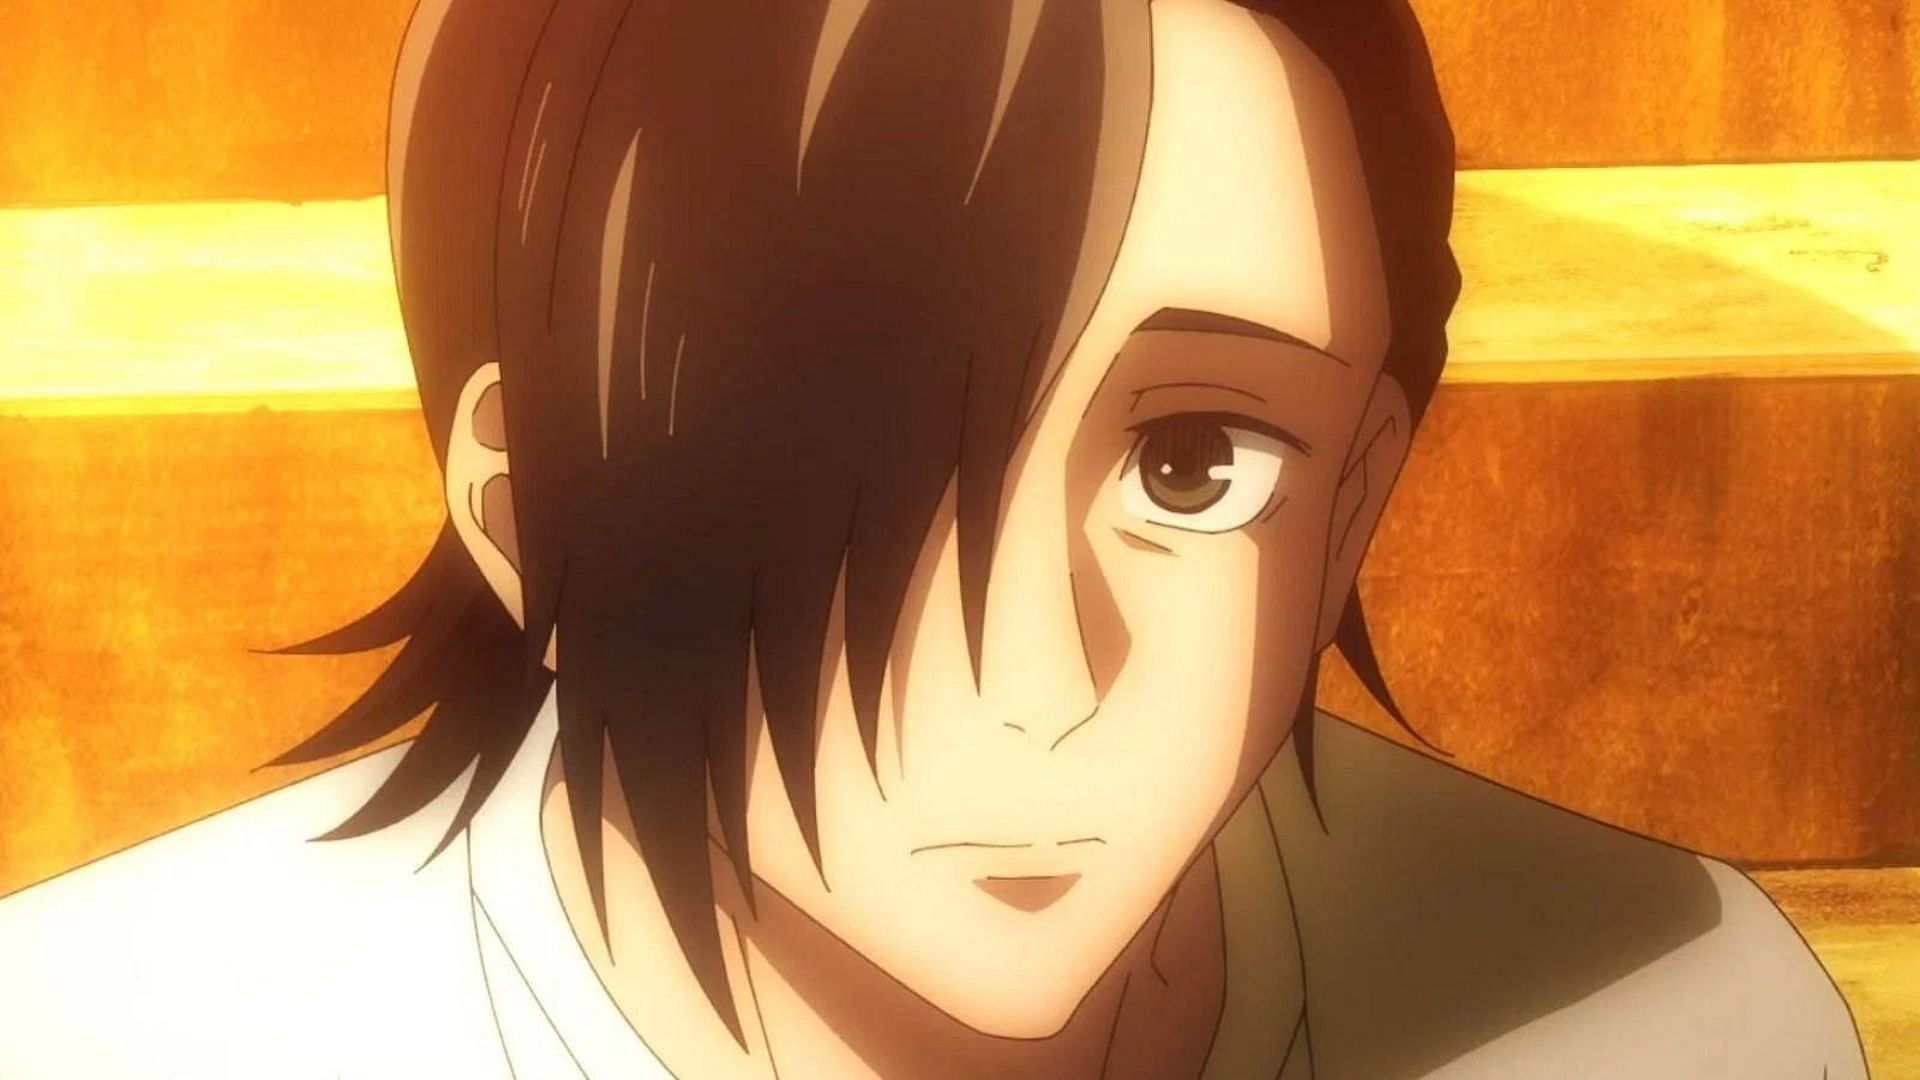 Junpei as shown in the anime (Image via Studio MAPPA)